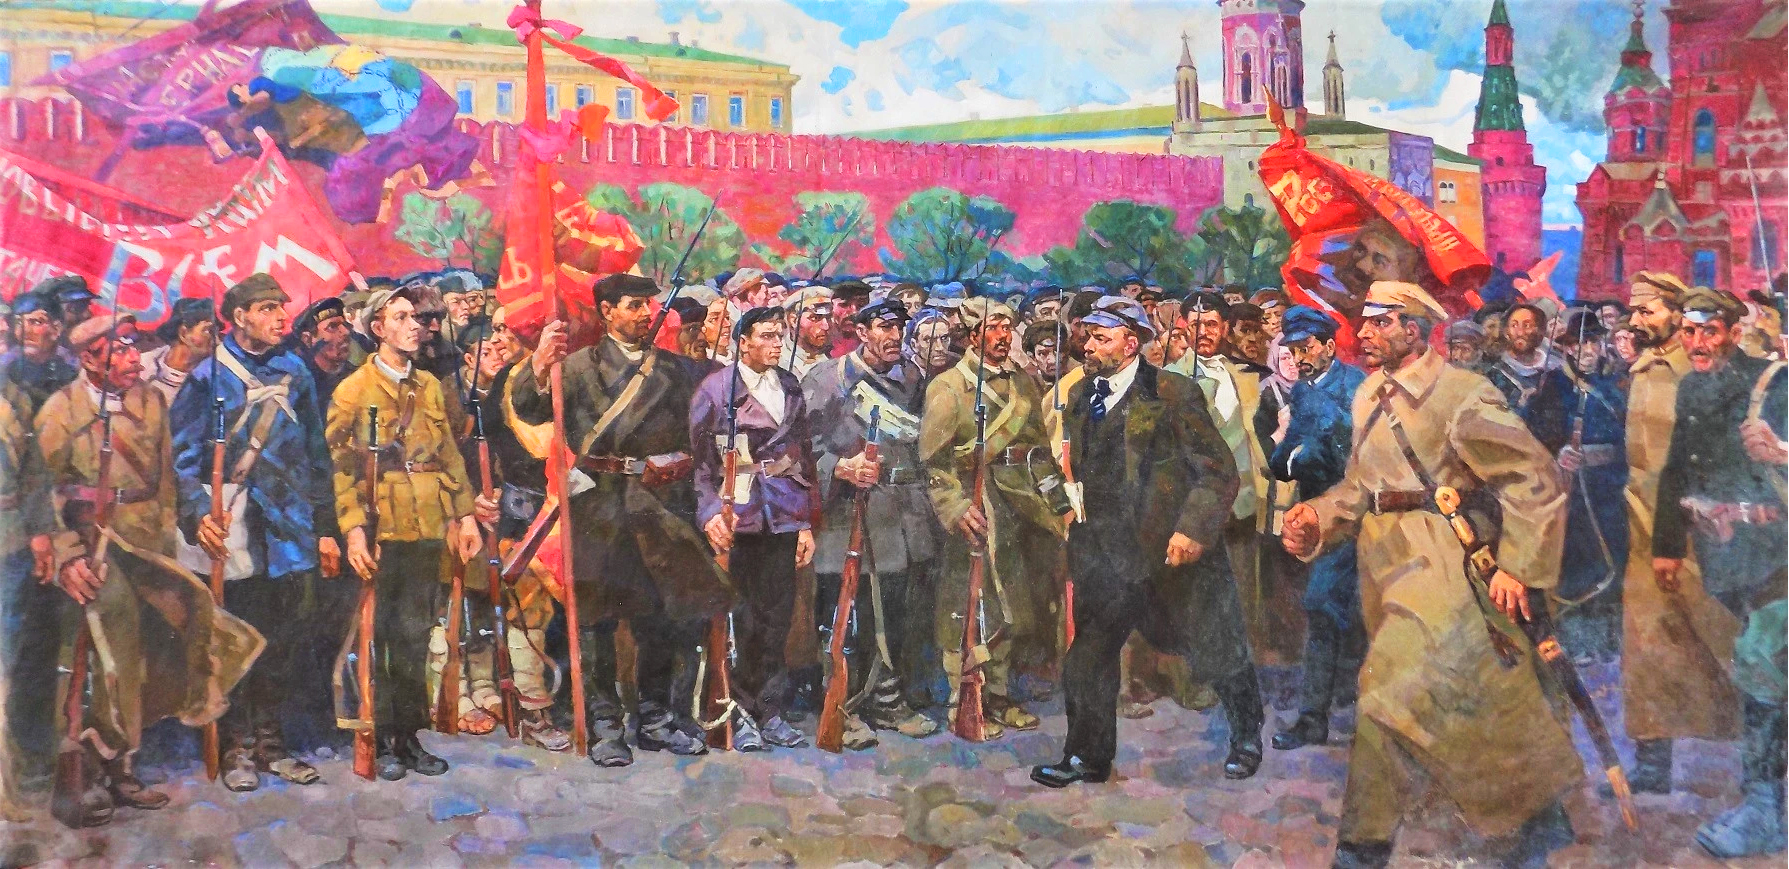 Tách rời, đối lập tư tưởng Hồ Chí Minh với chủ nghĩa Mác - Lênin ...